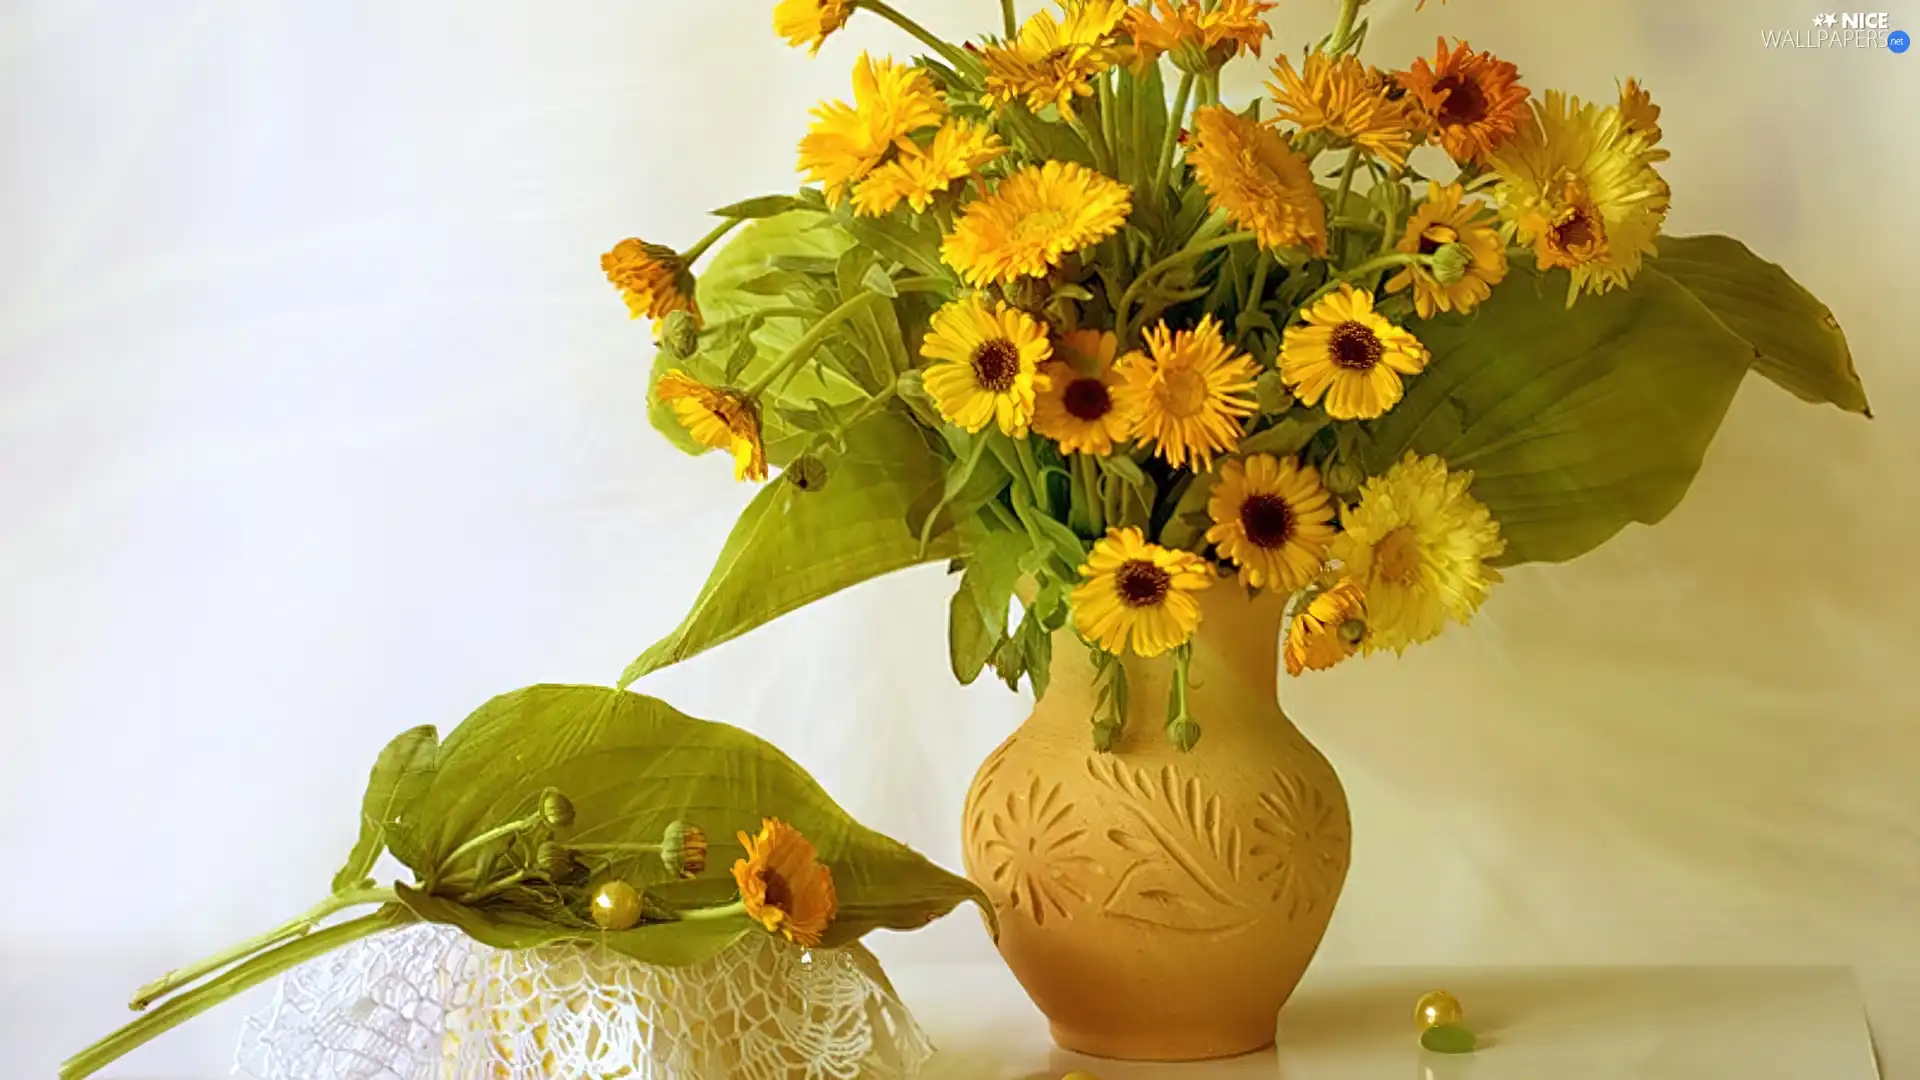 earthen, Yellow, Marigolds, Vase